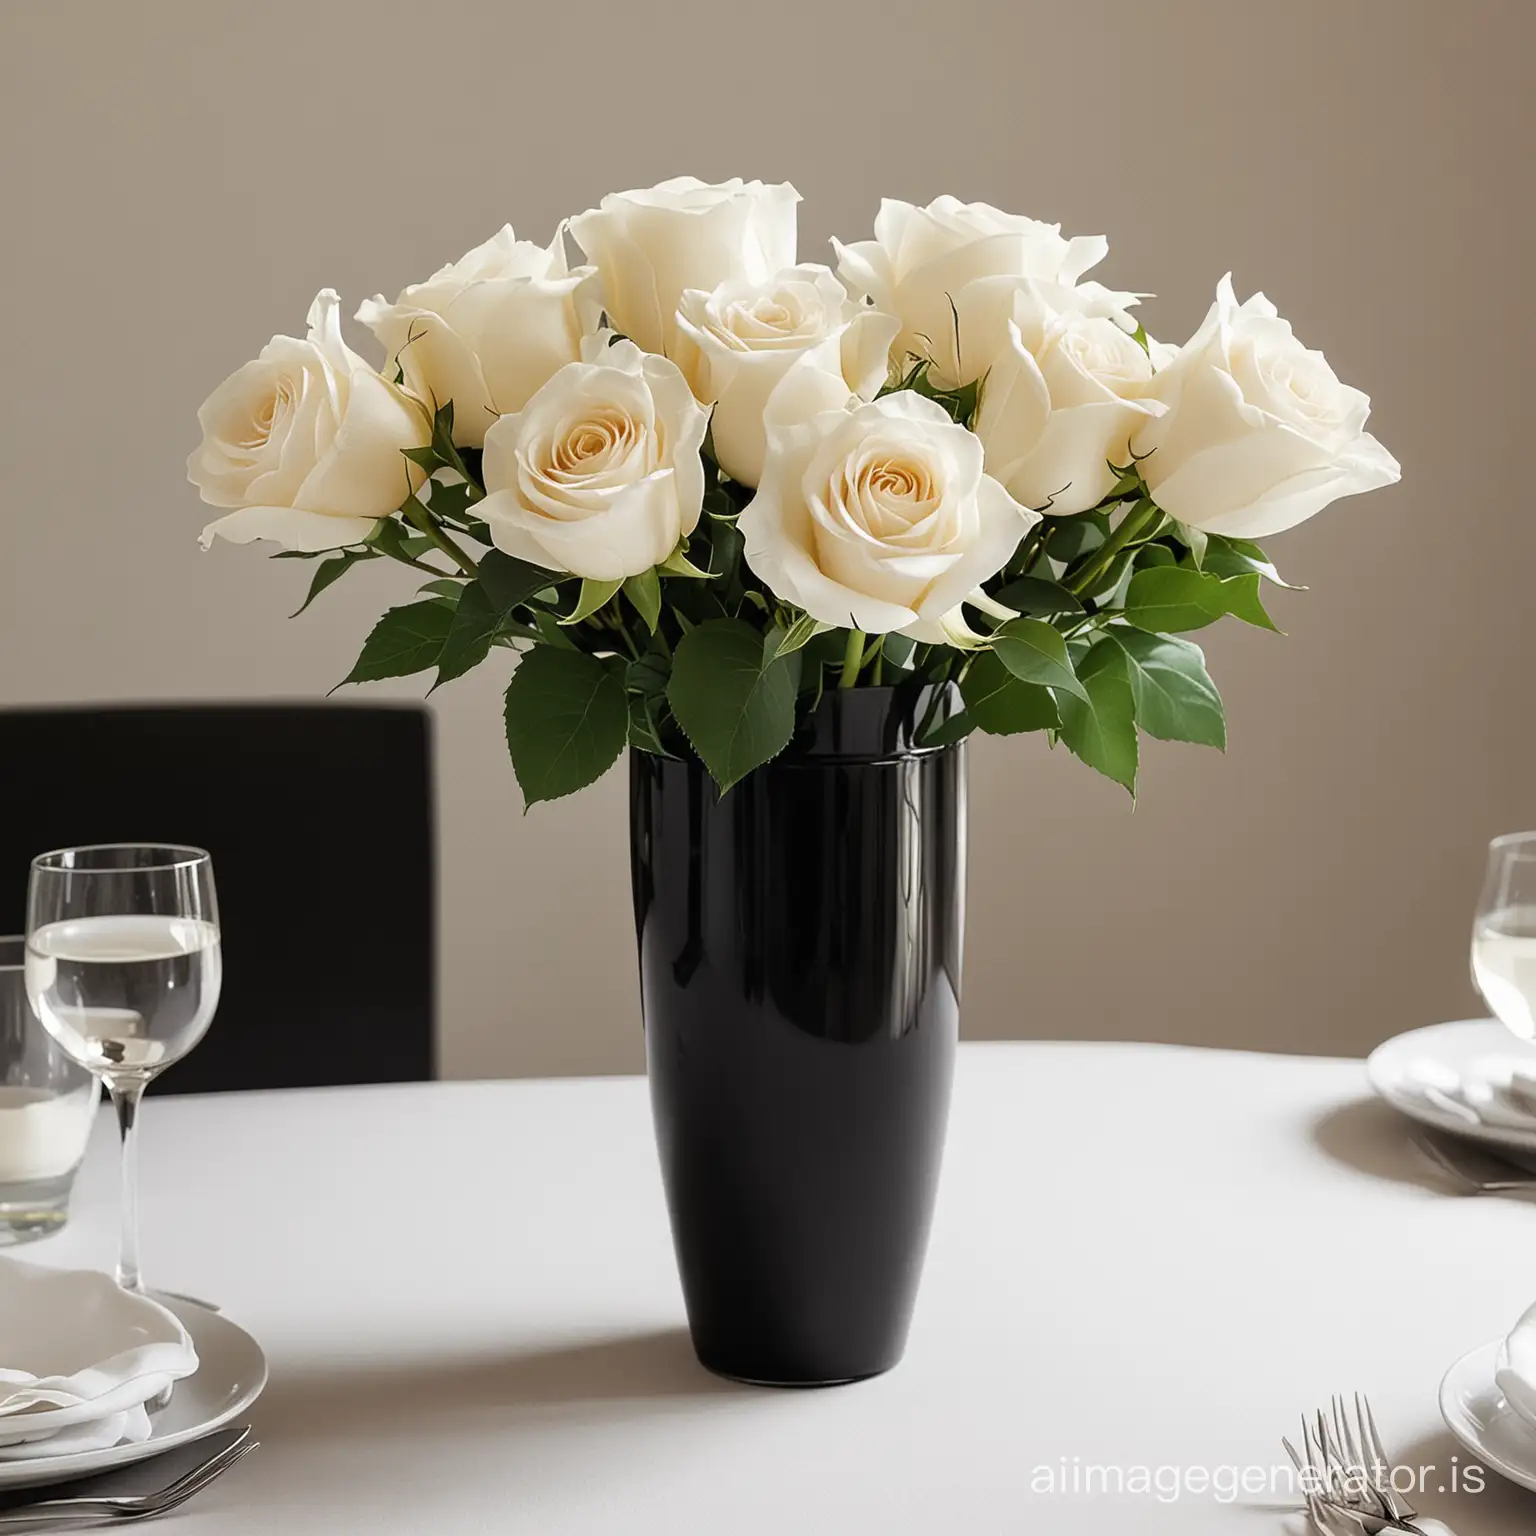 Minimalist-Wedding-Centerpiece-Elegant-Black-Vase-with-White-Roses